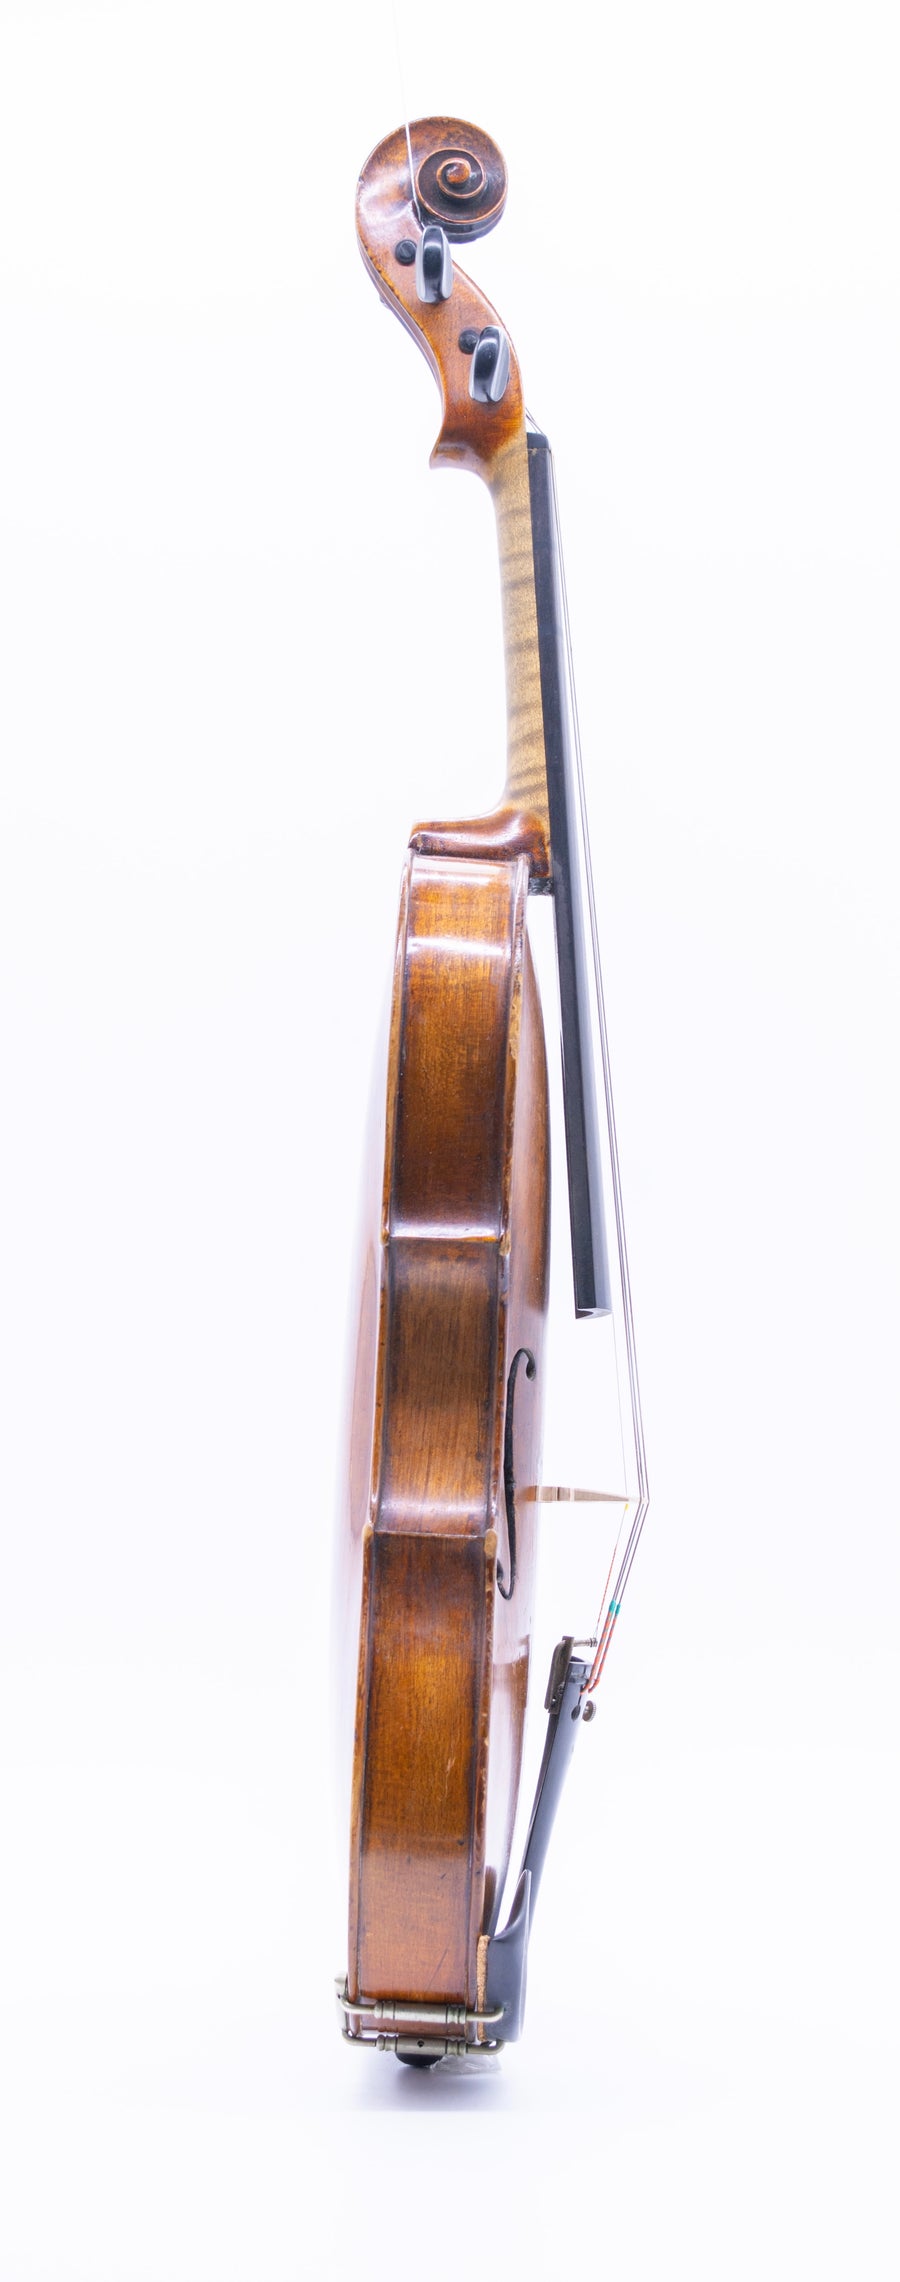 Circa 1790 Voigtland Violin.